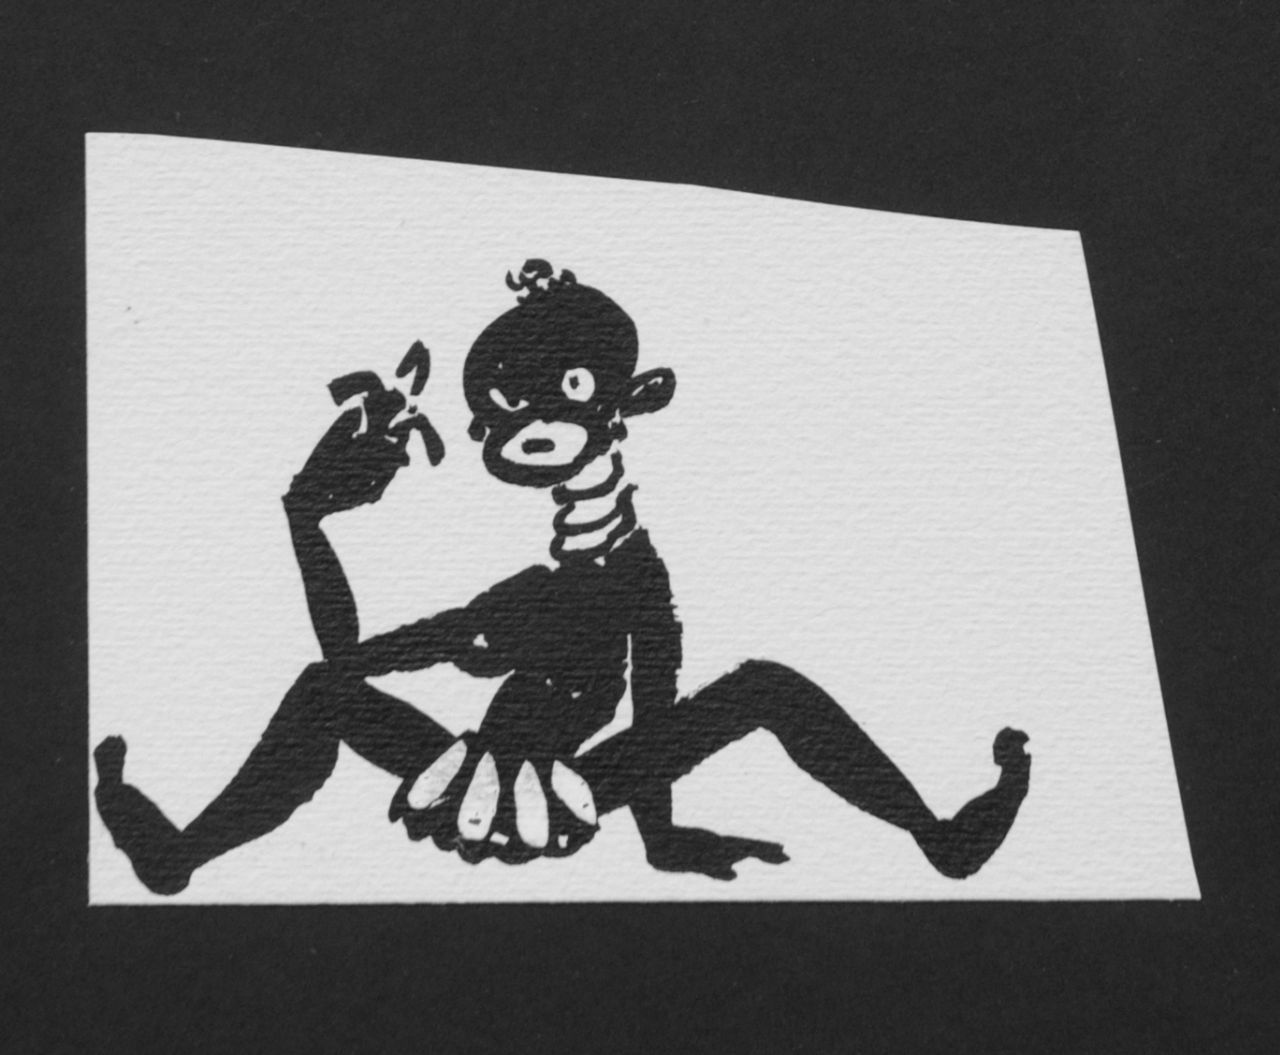 Oranje-Nassau (Prinses Beatrix) B.W.A. van | Beatrix Wilhelmina Armgard van Oranje-Nassau (Prinses Beatrix), Sitting negro, Bleistift und Ausziehtusche auf Papier 8,5 x 12,0 cm, executed August 1960